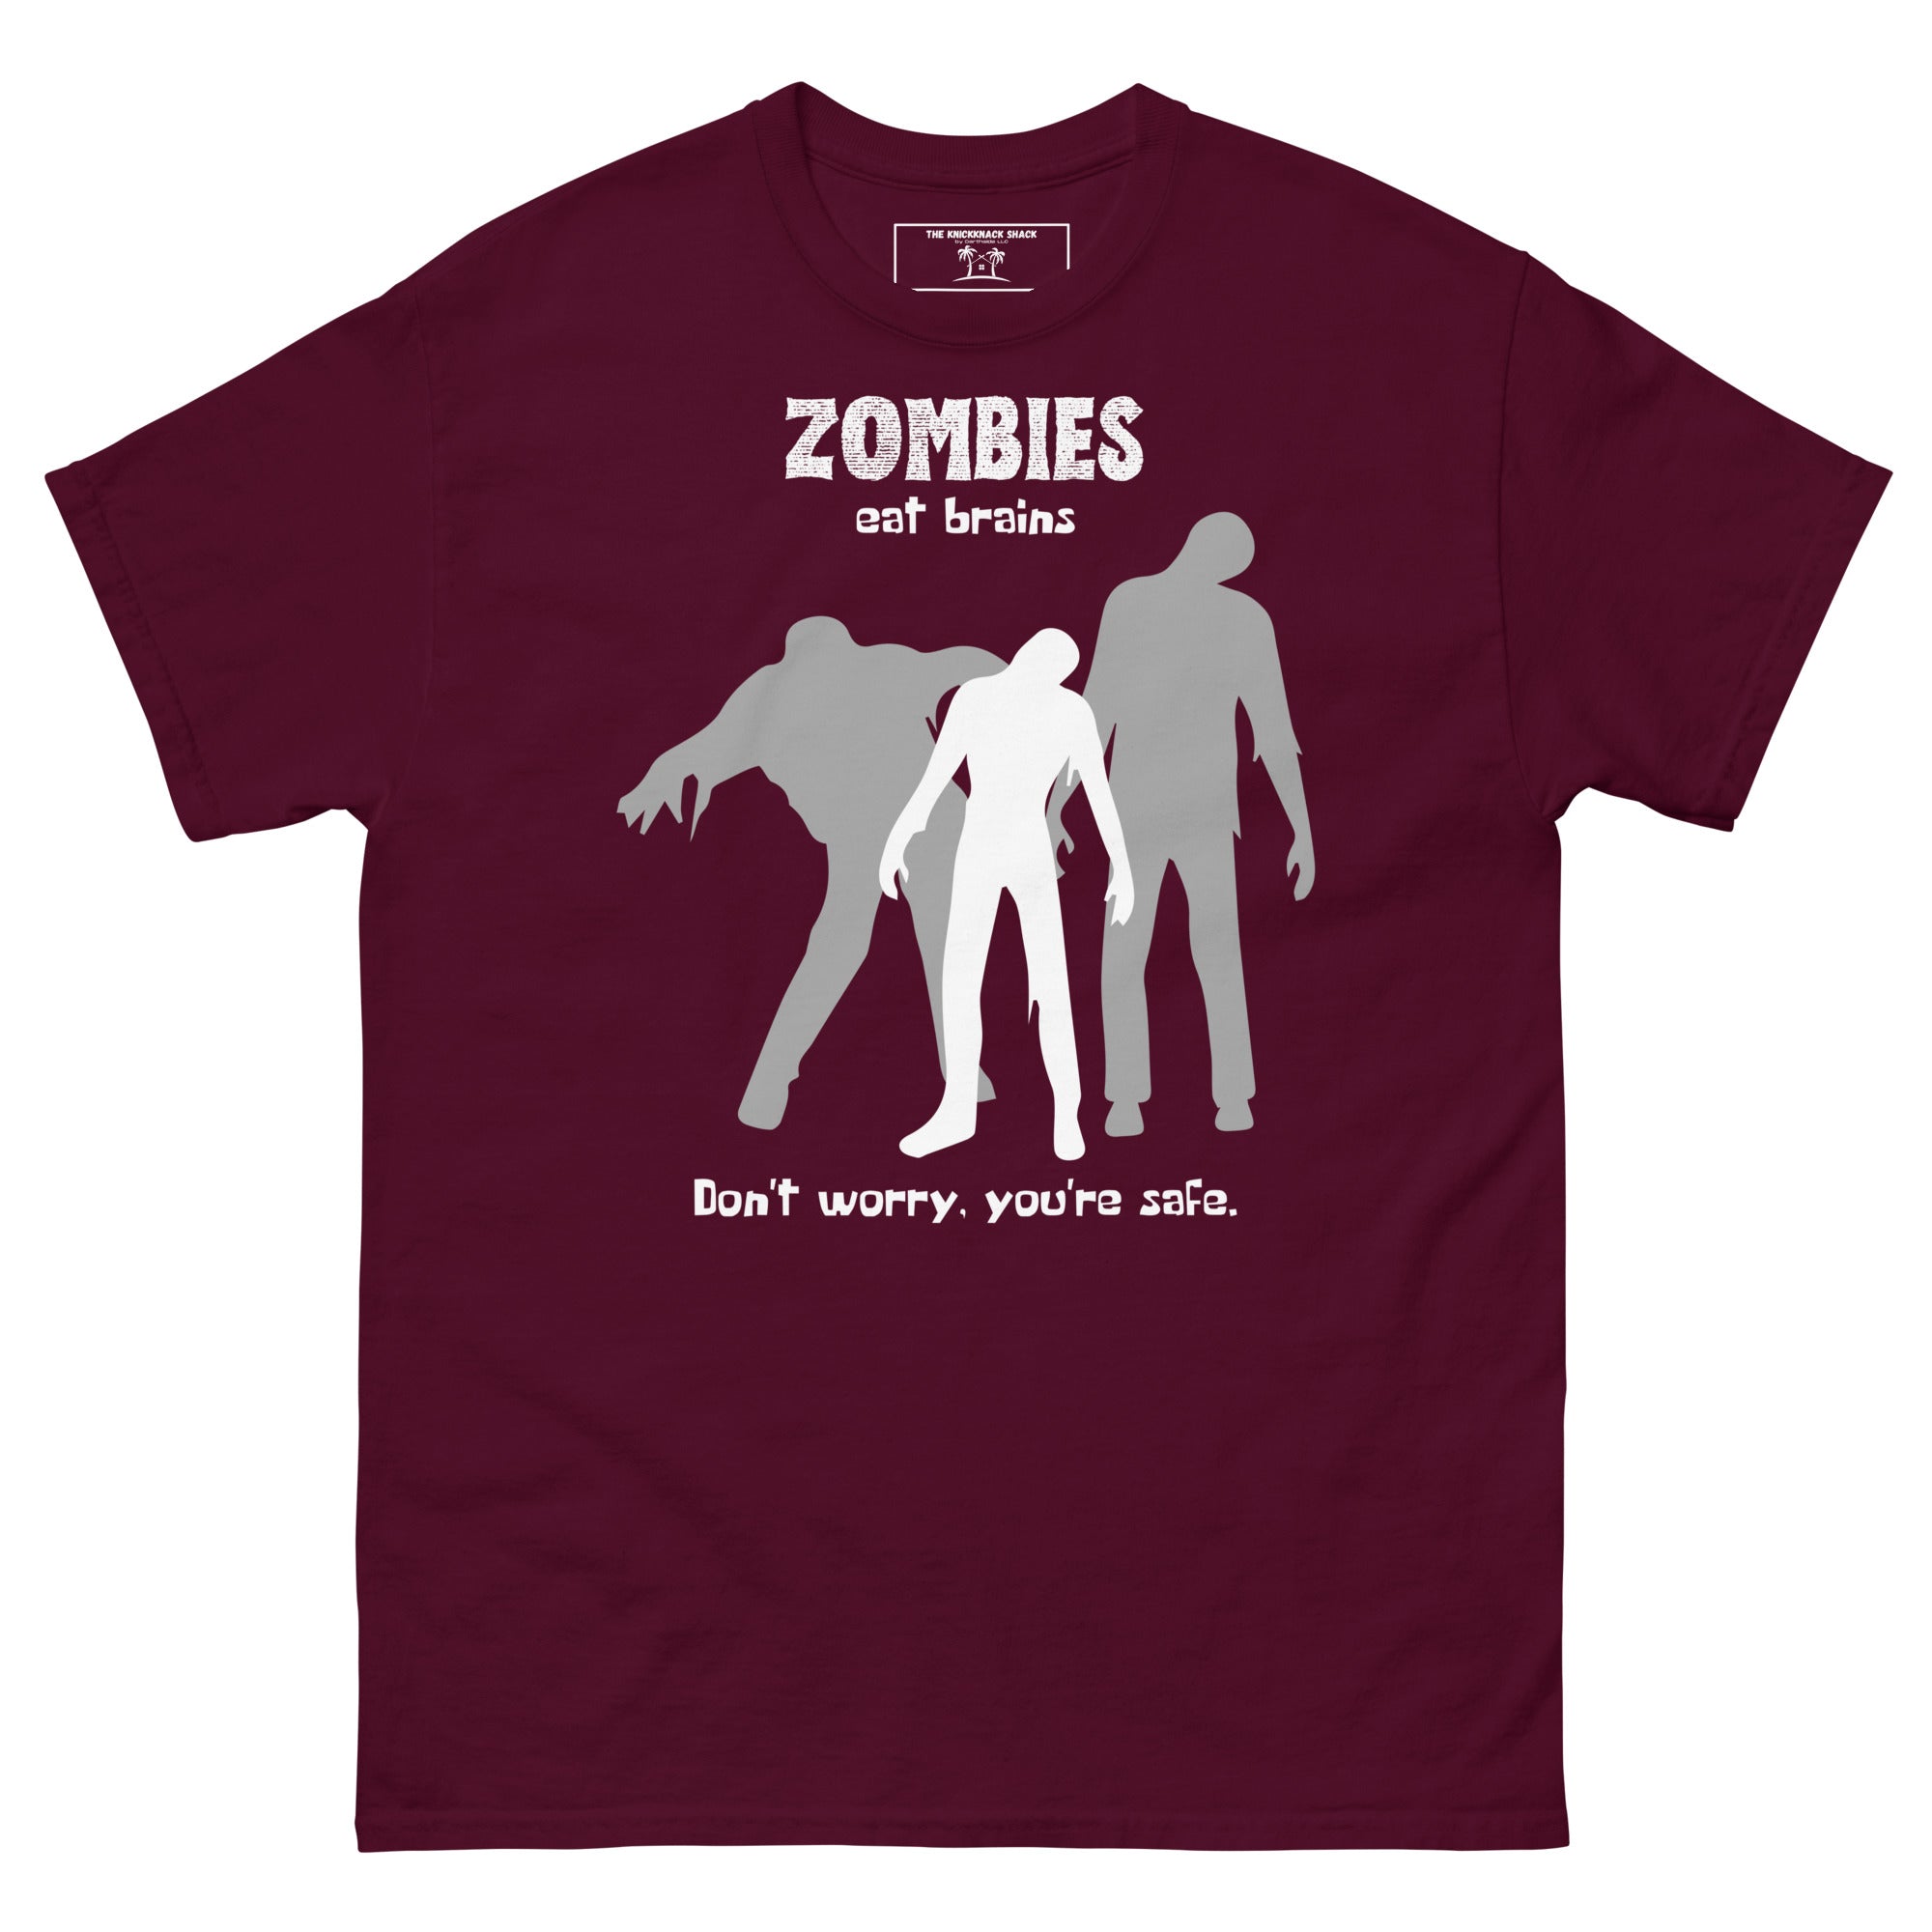 Tee-shirt classique - Zombies (couleurs sombres)